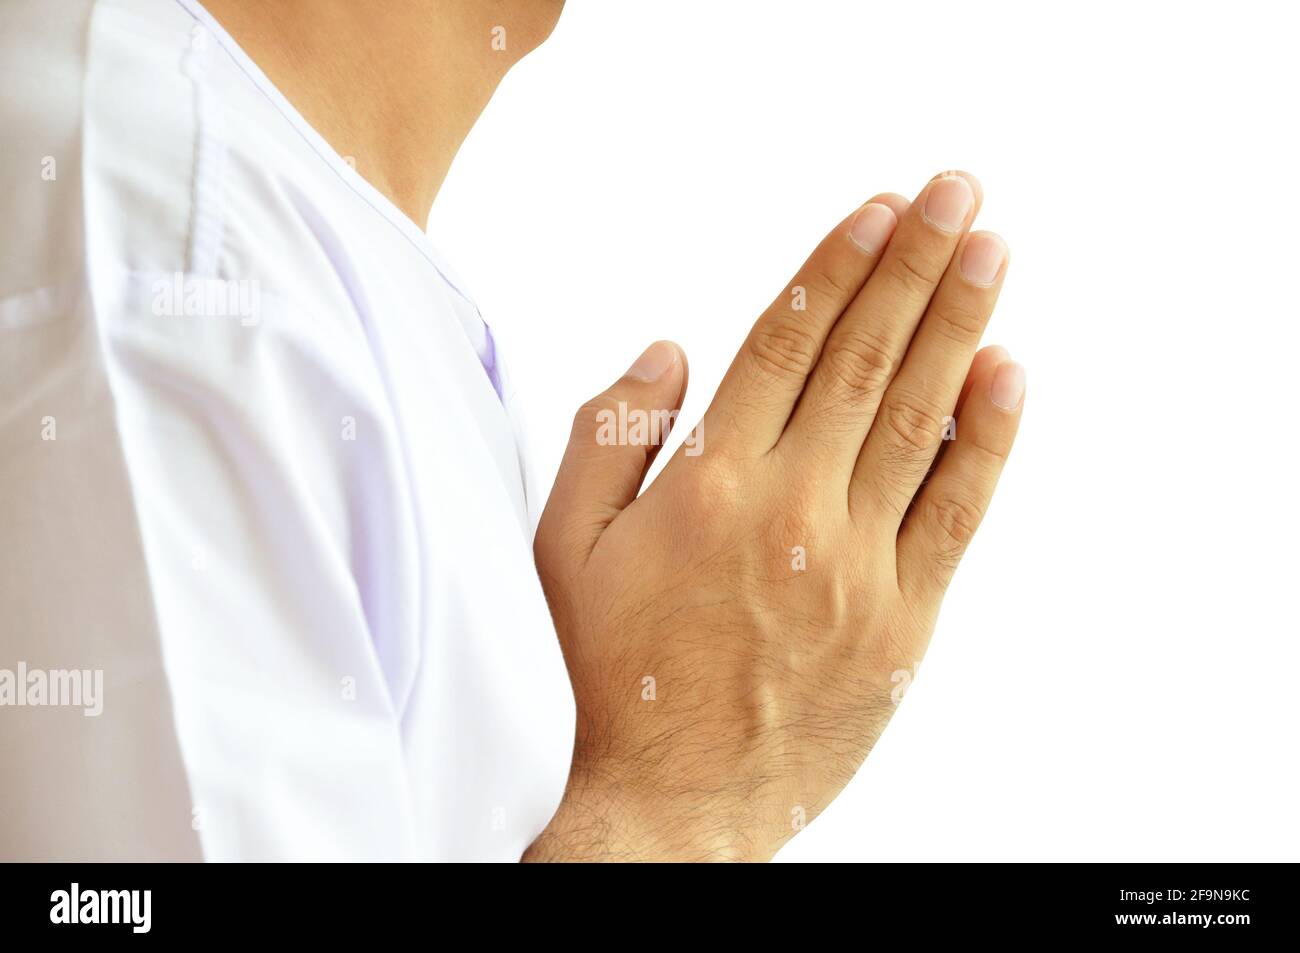 Hände, die Wai oder Sawasdee gestikulieren - Respektschild wird meistens verwendet In Südostasien Stockfoto